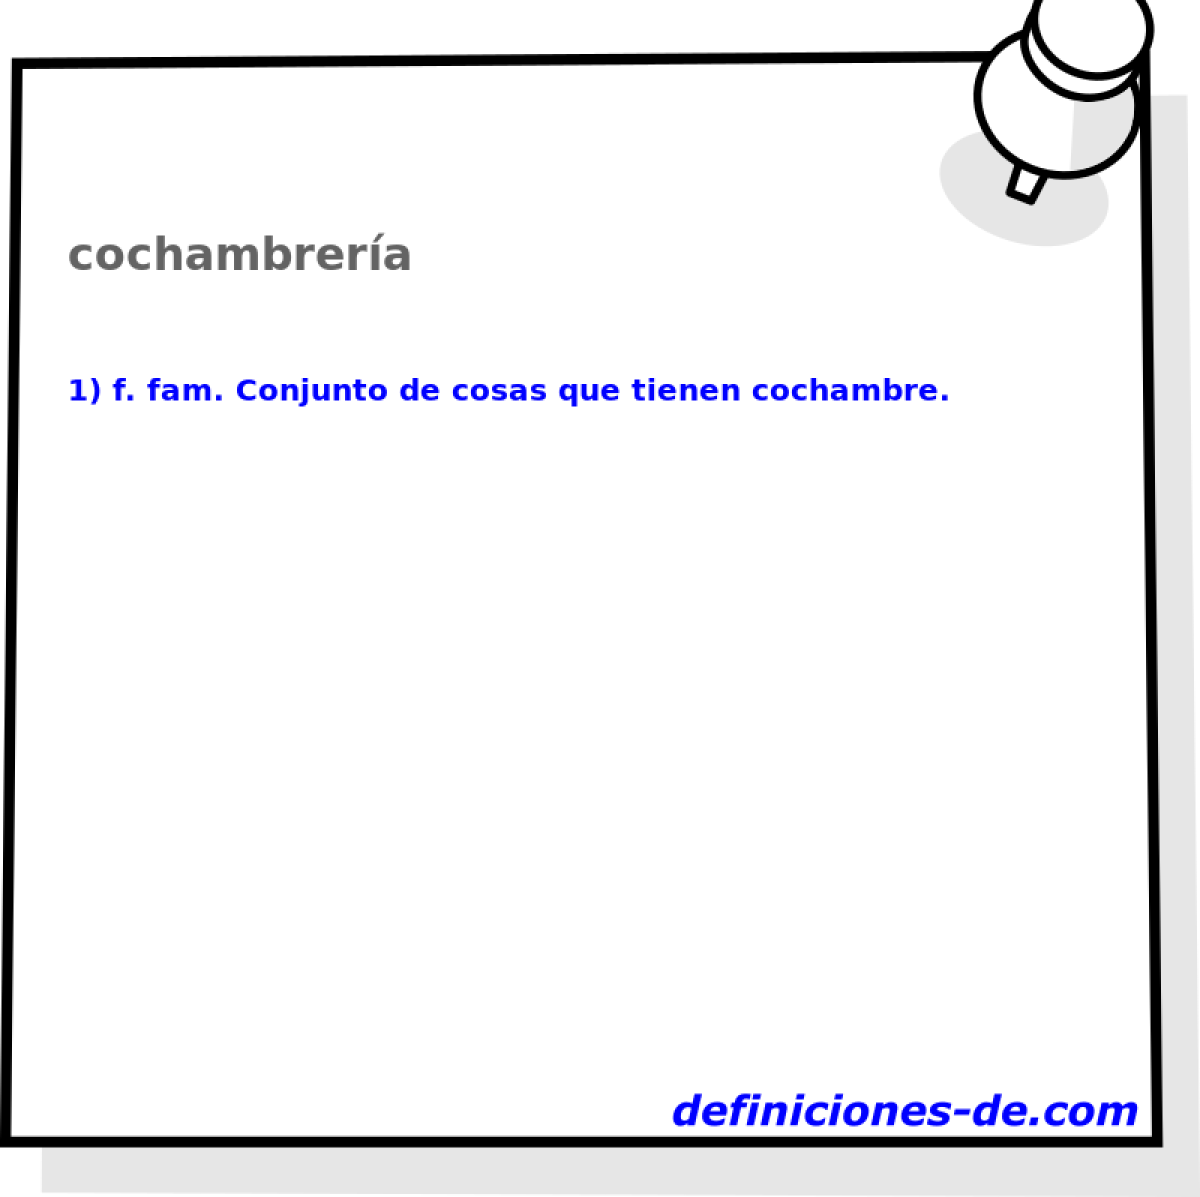 cochambrera 